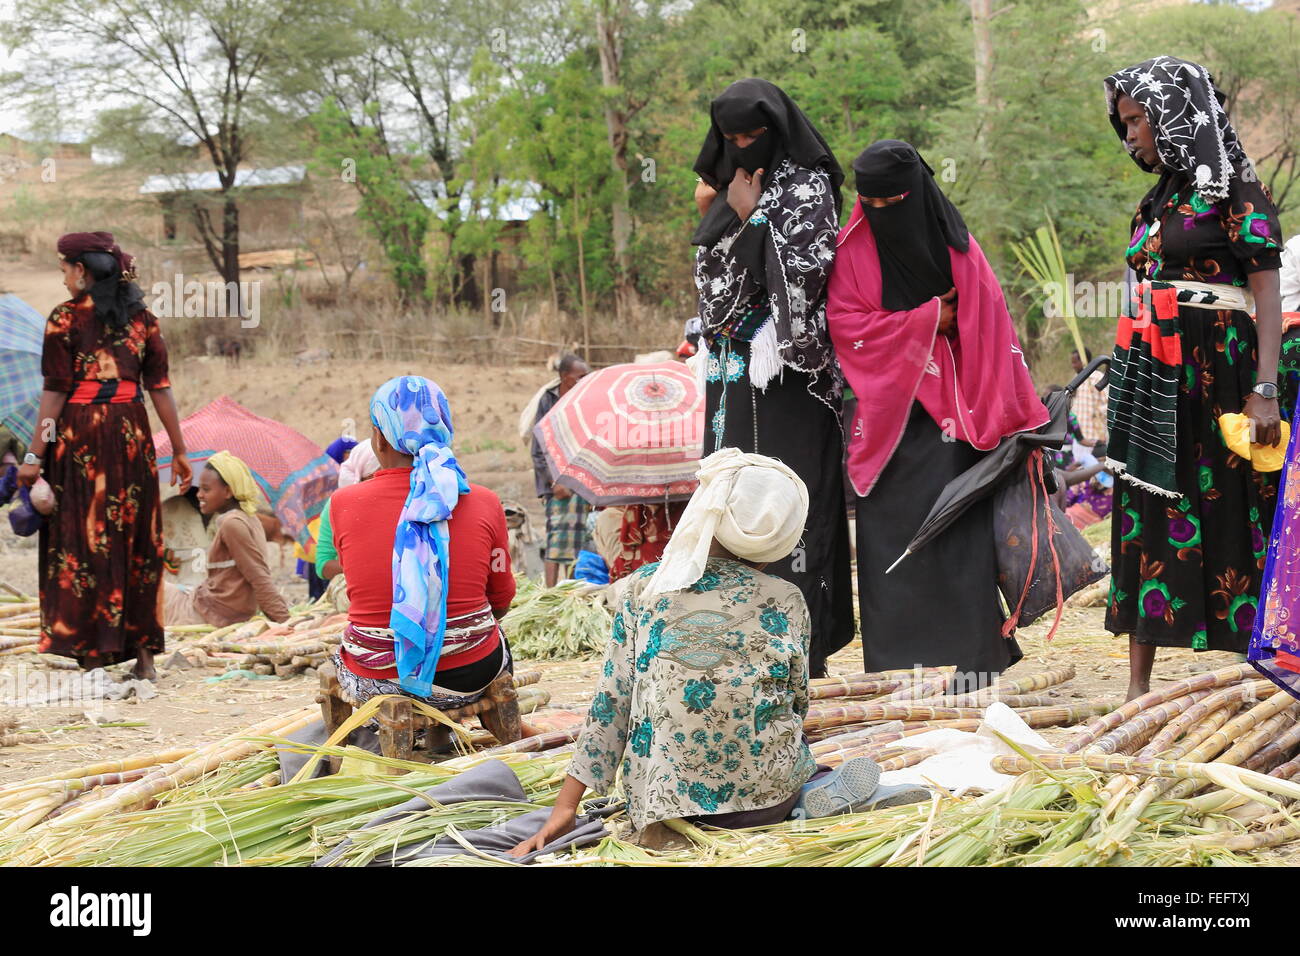 SENBETE, ETIOPIA-marzo 24: donne locali vendono la canna da zucchero in una fase di stallo del mercato di domenica dove il oromo-amhara-lontano i popoli incontrano Foto Stock